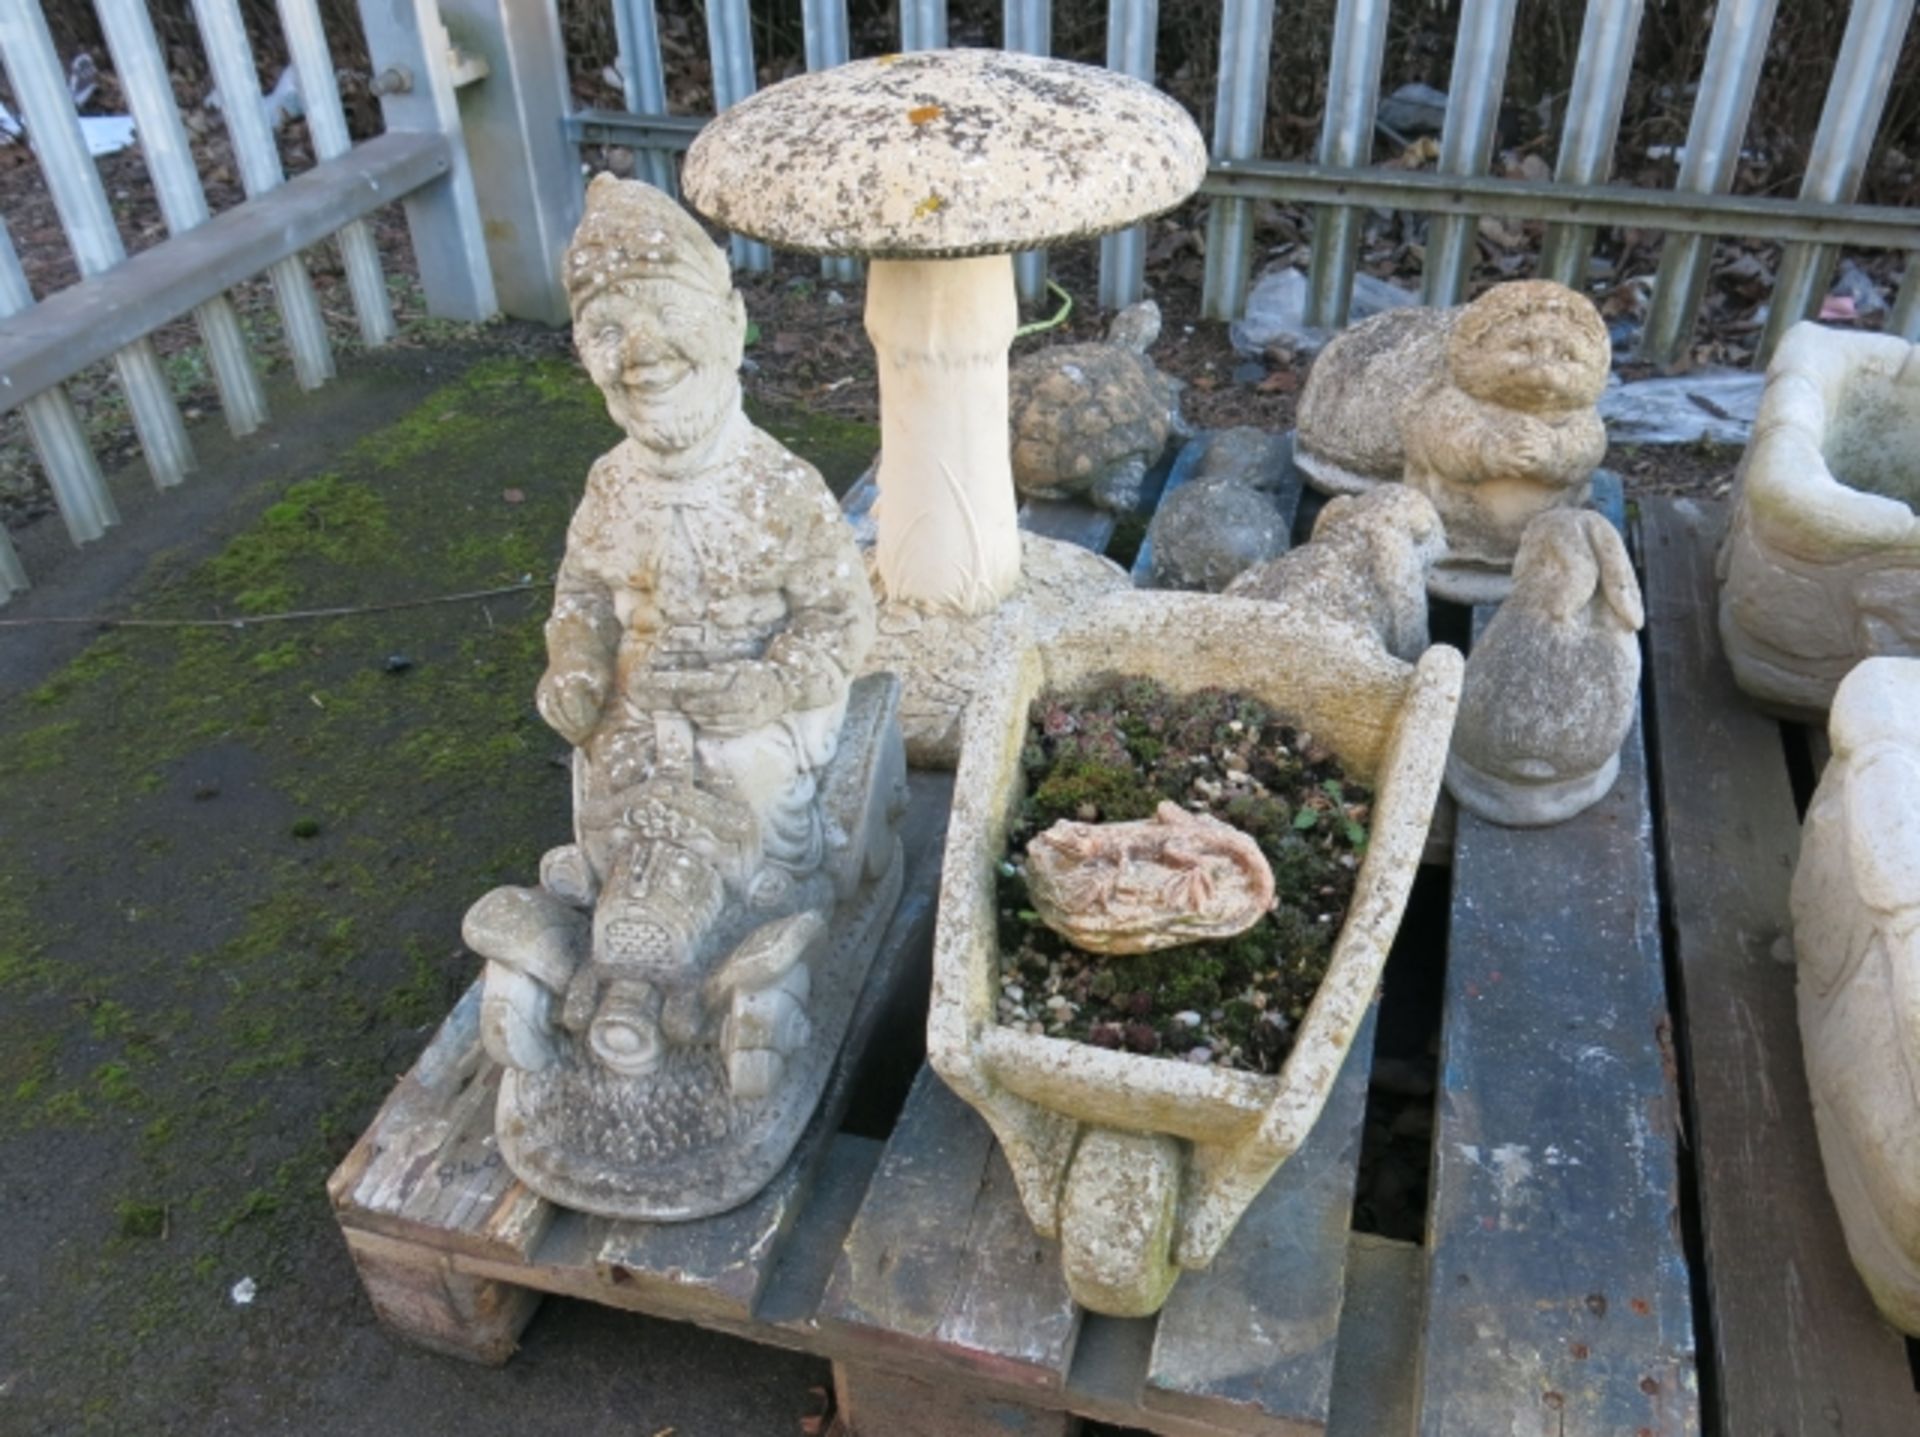 A selection of concrete Garden Ornaments